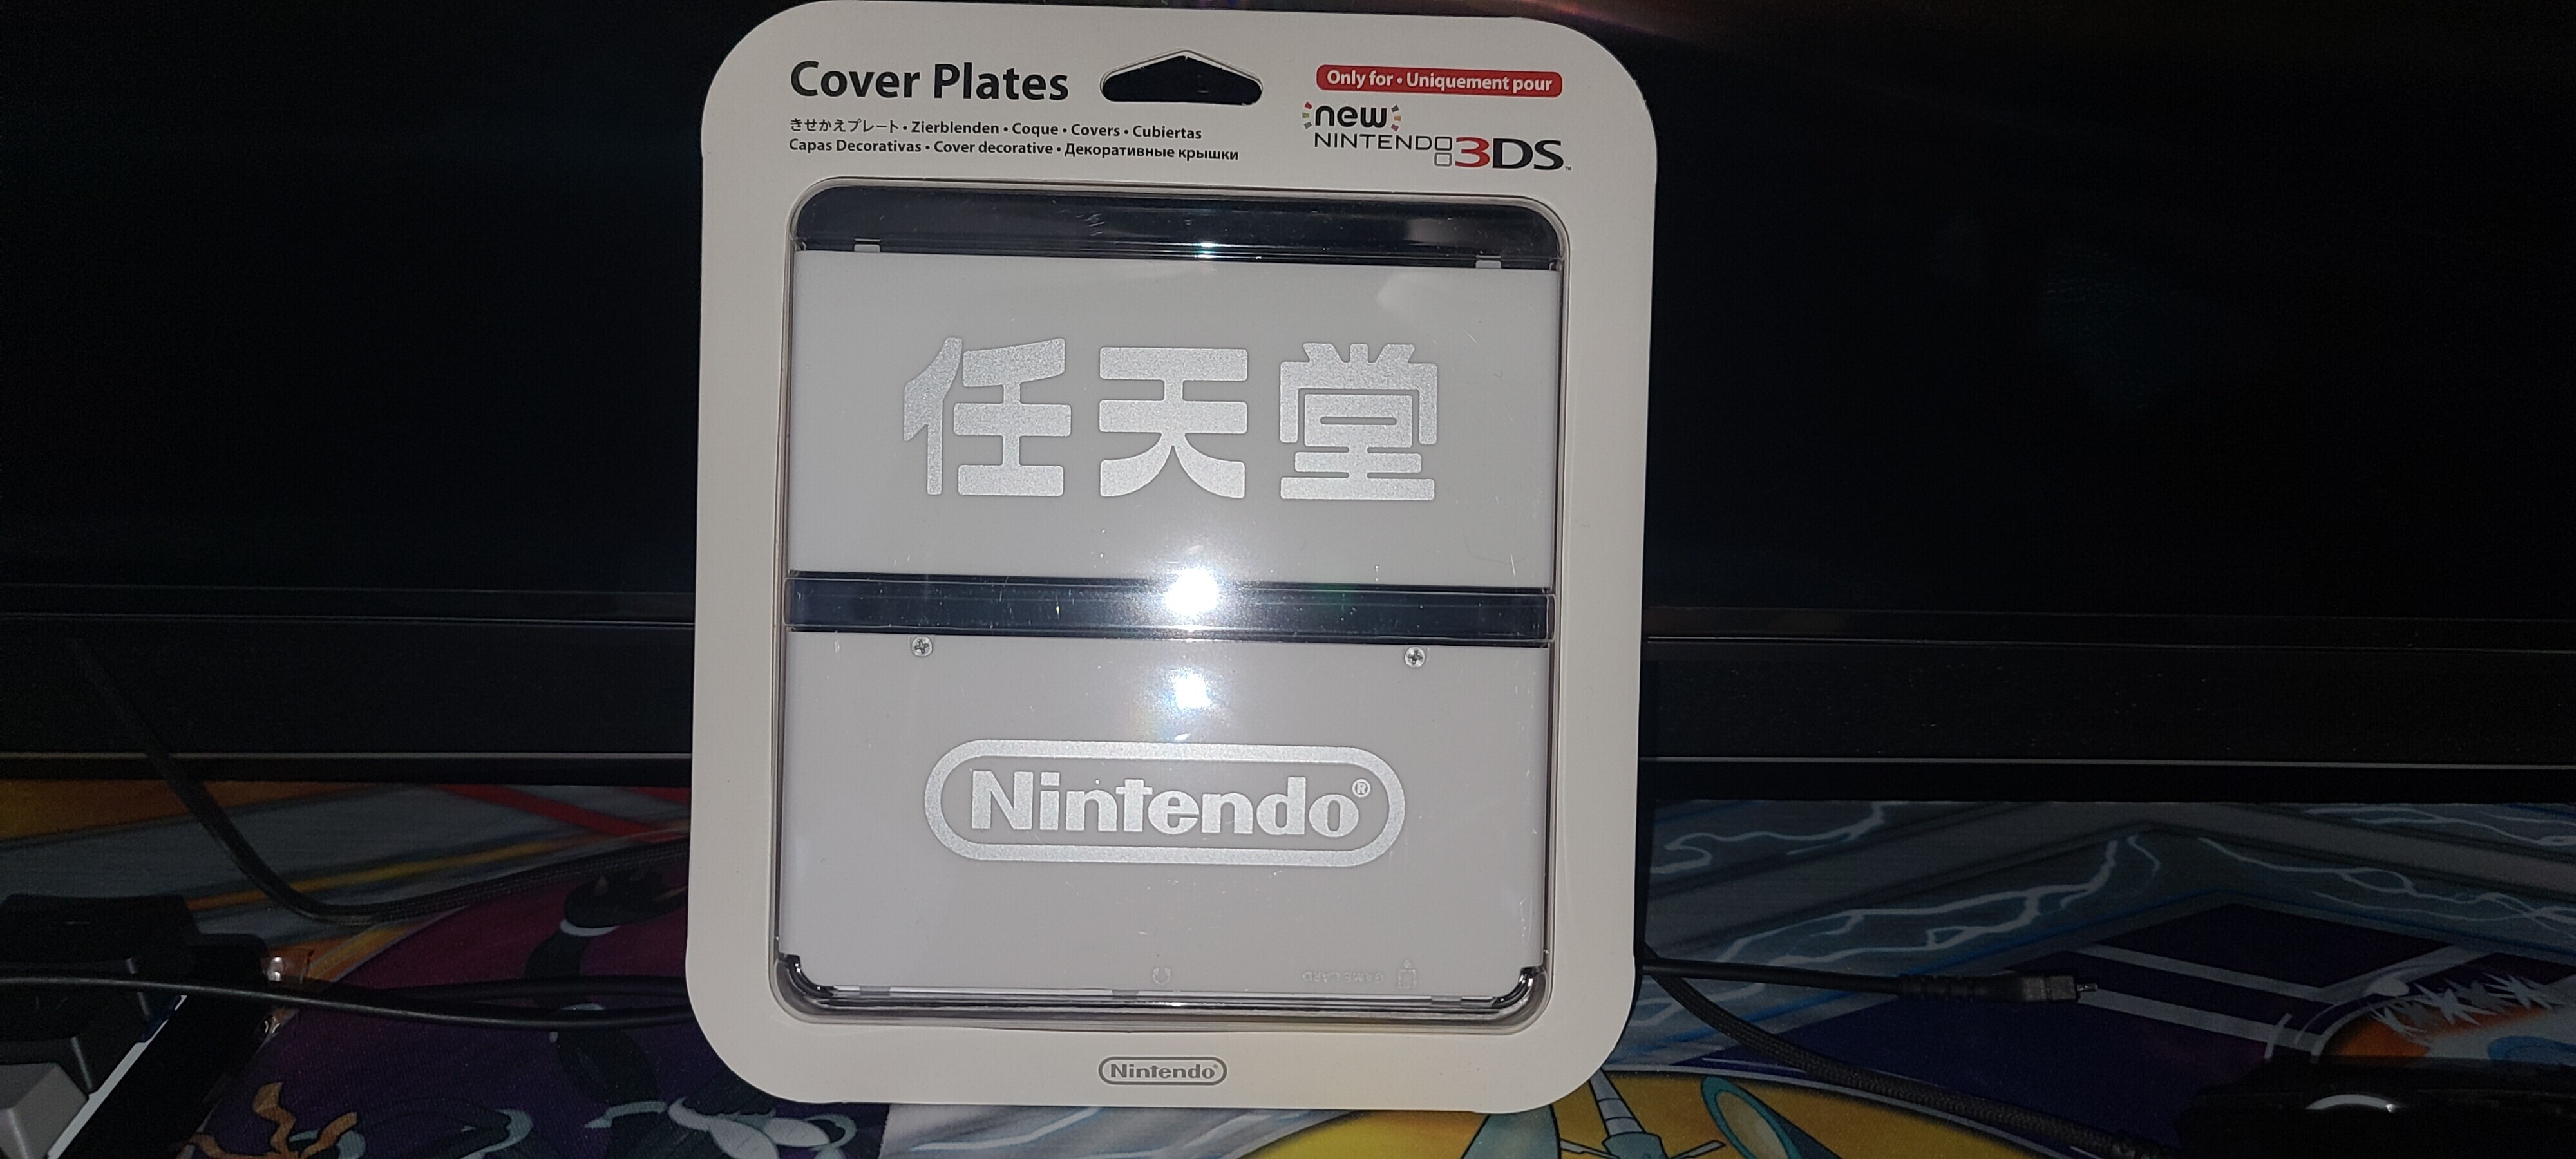  New Nintendo 3DS Ambassador Cover Plates